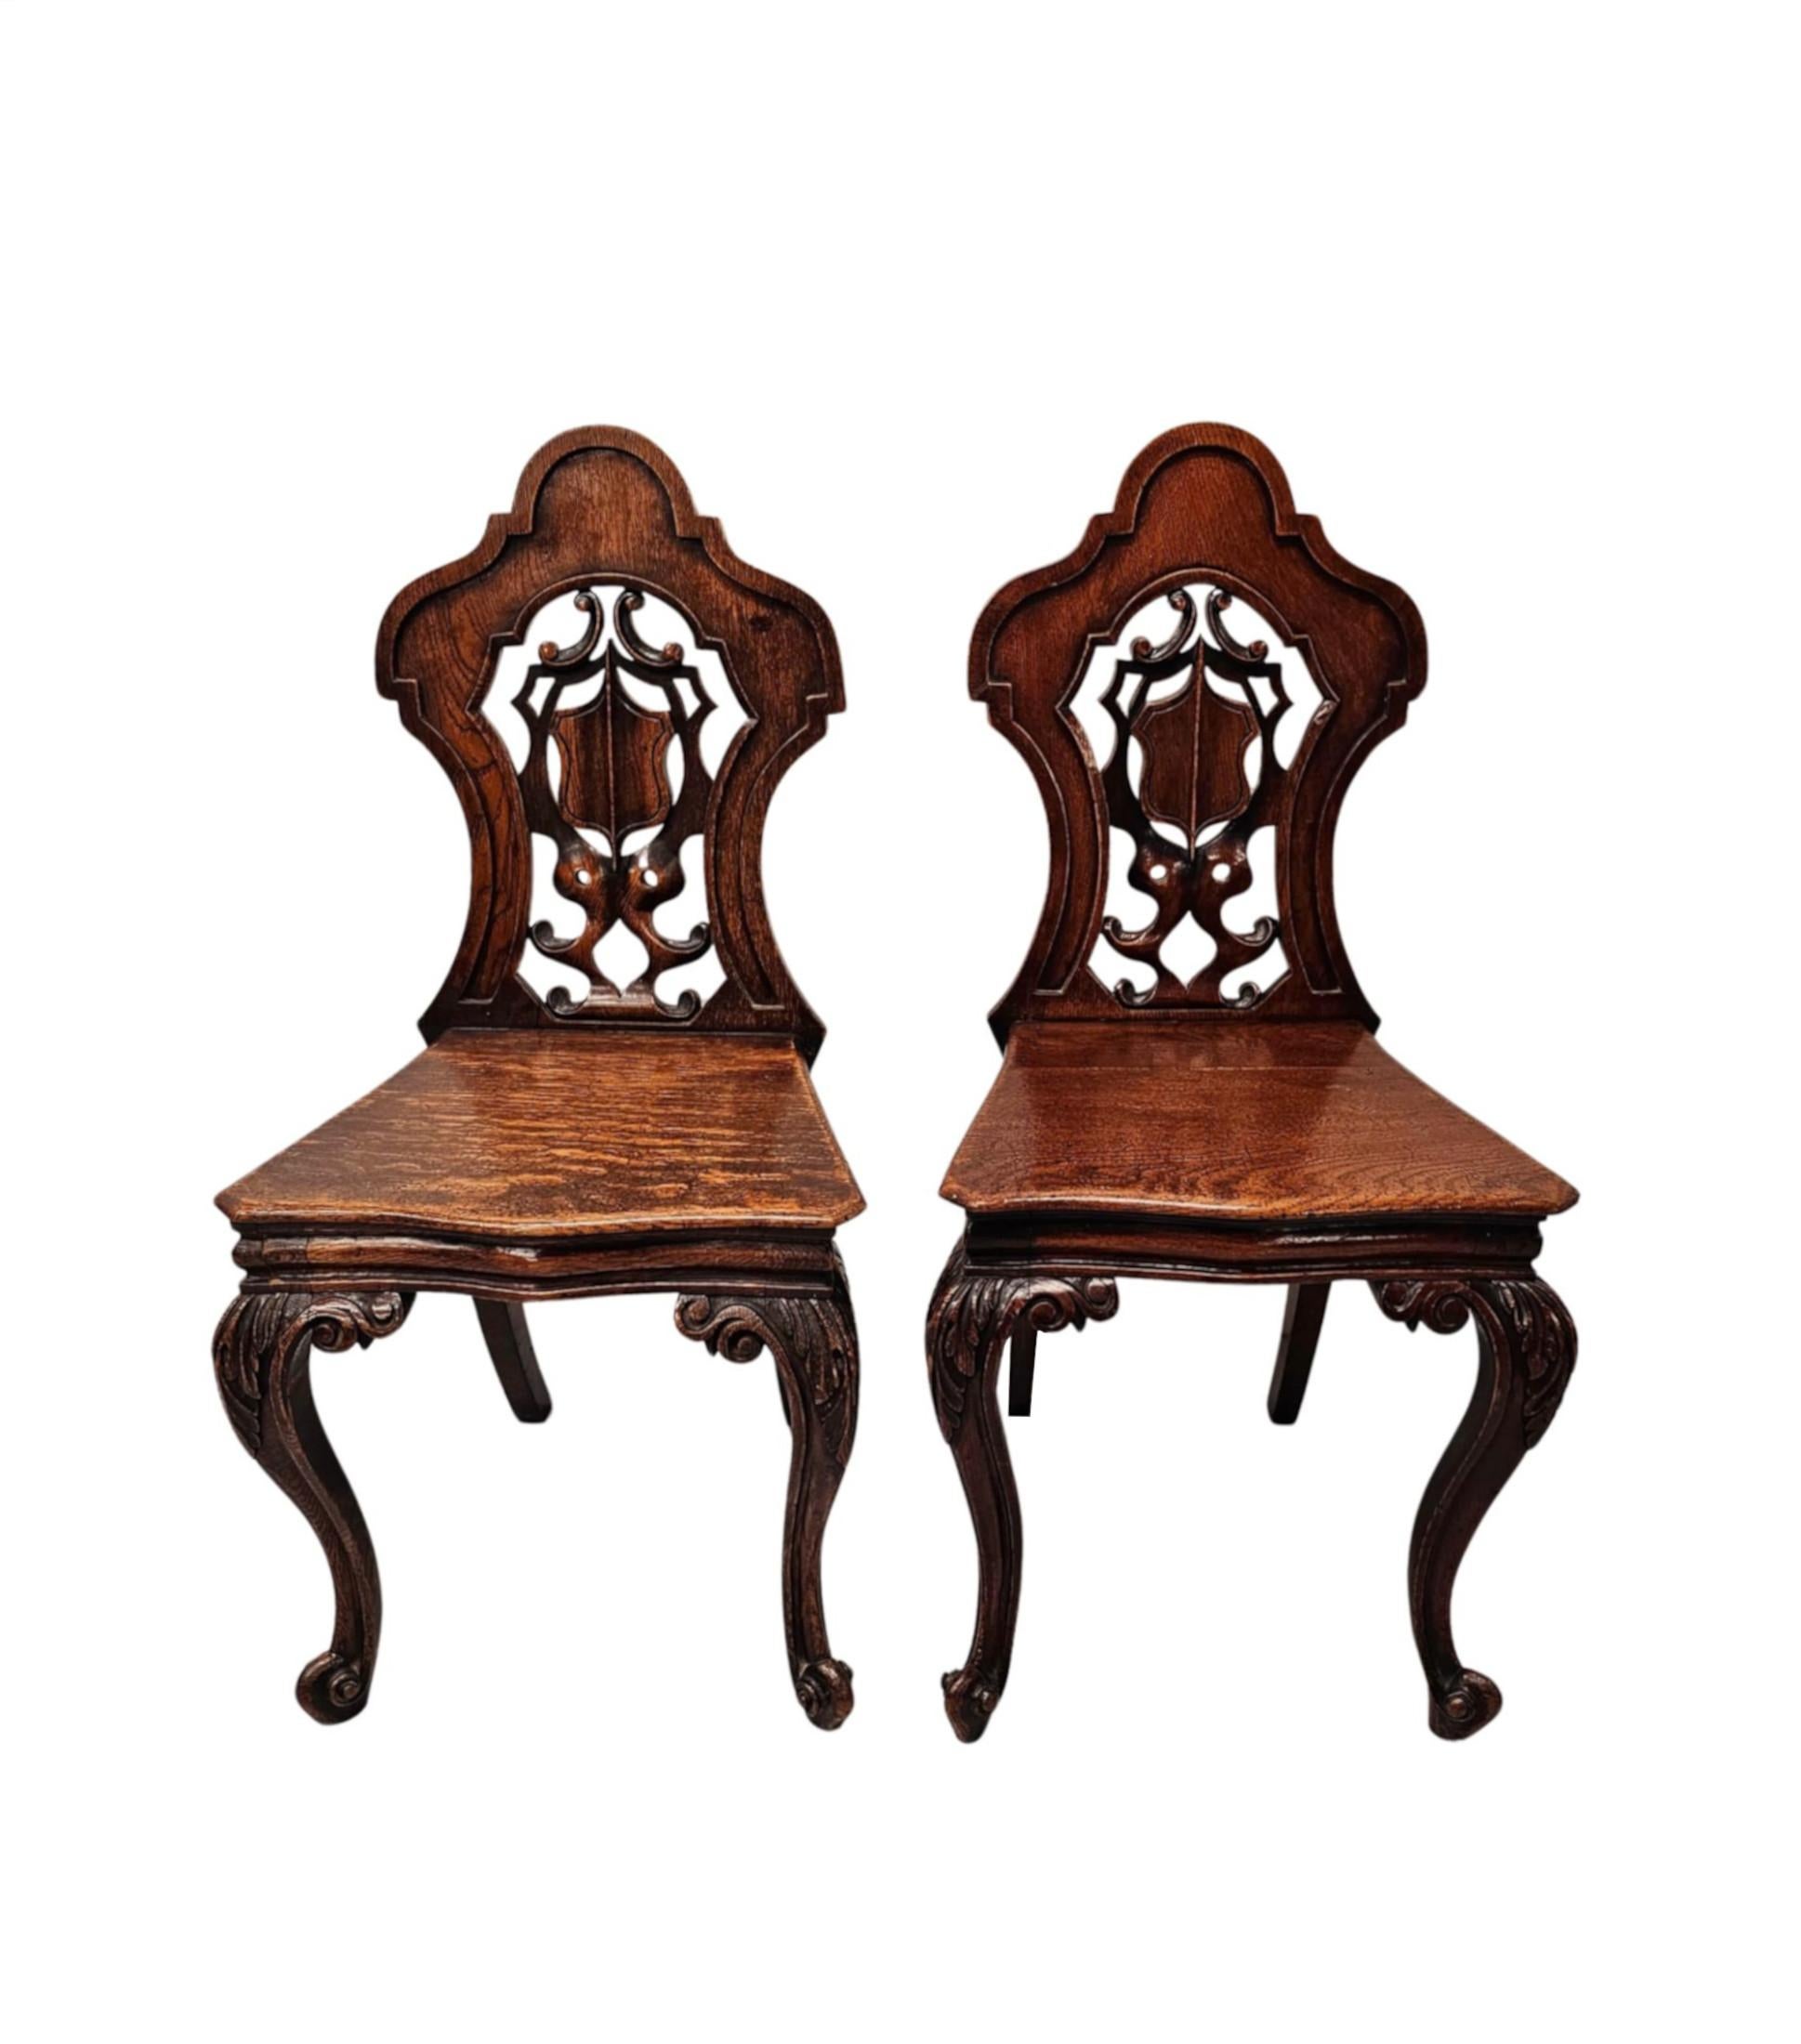 Une fabuleuse paire de chaises de salle en chêne du 19ème siècle de superbe qualité et finement sculptées à la main avec une patine et un grain magnifiquement riches.  Le dos du bouclier, bien figuré, lambrissé et percé, est orné de magnifiques